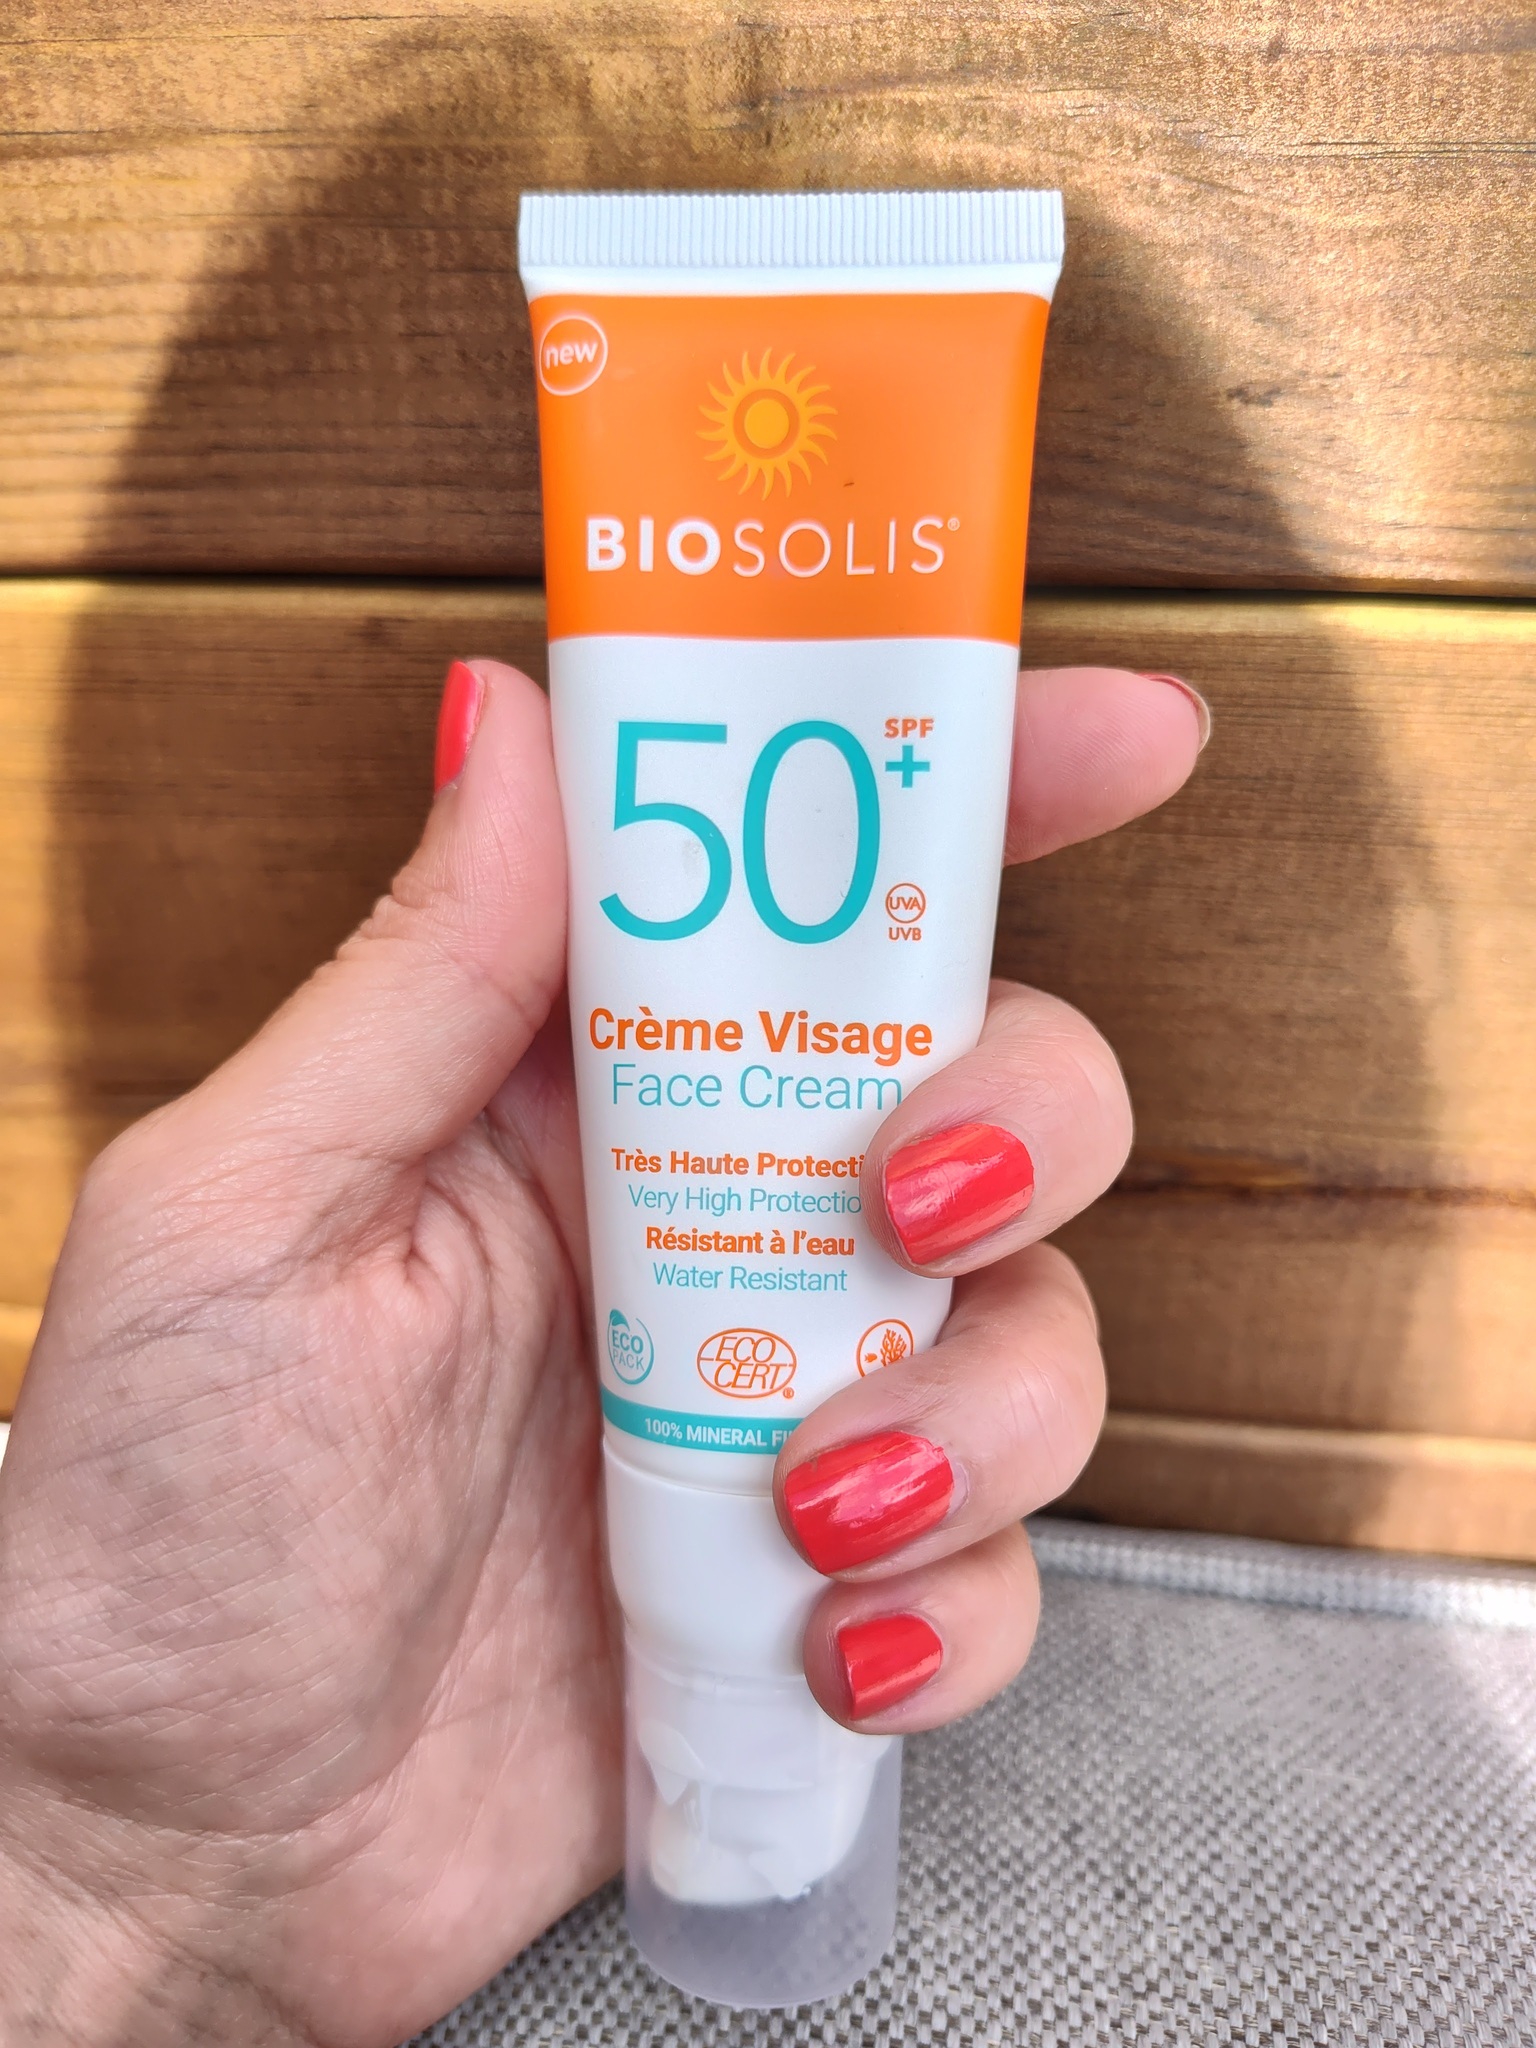 Biosolis Face Cream Spf 50+